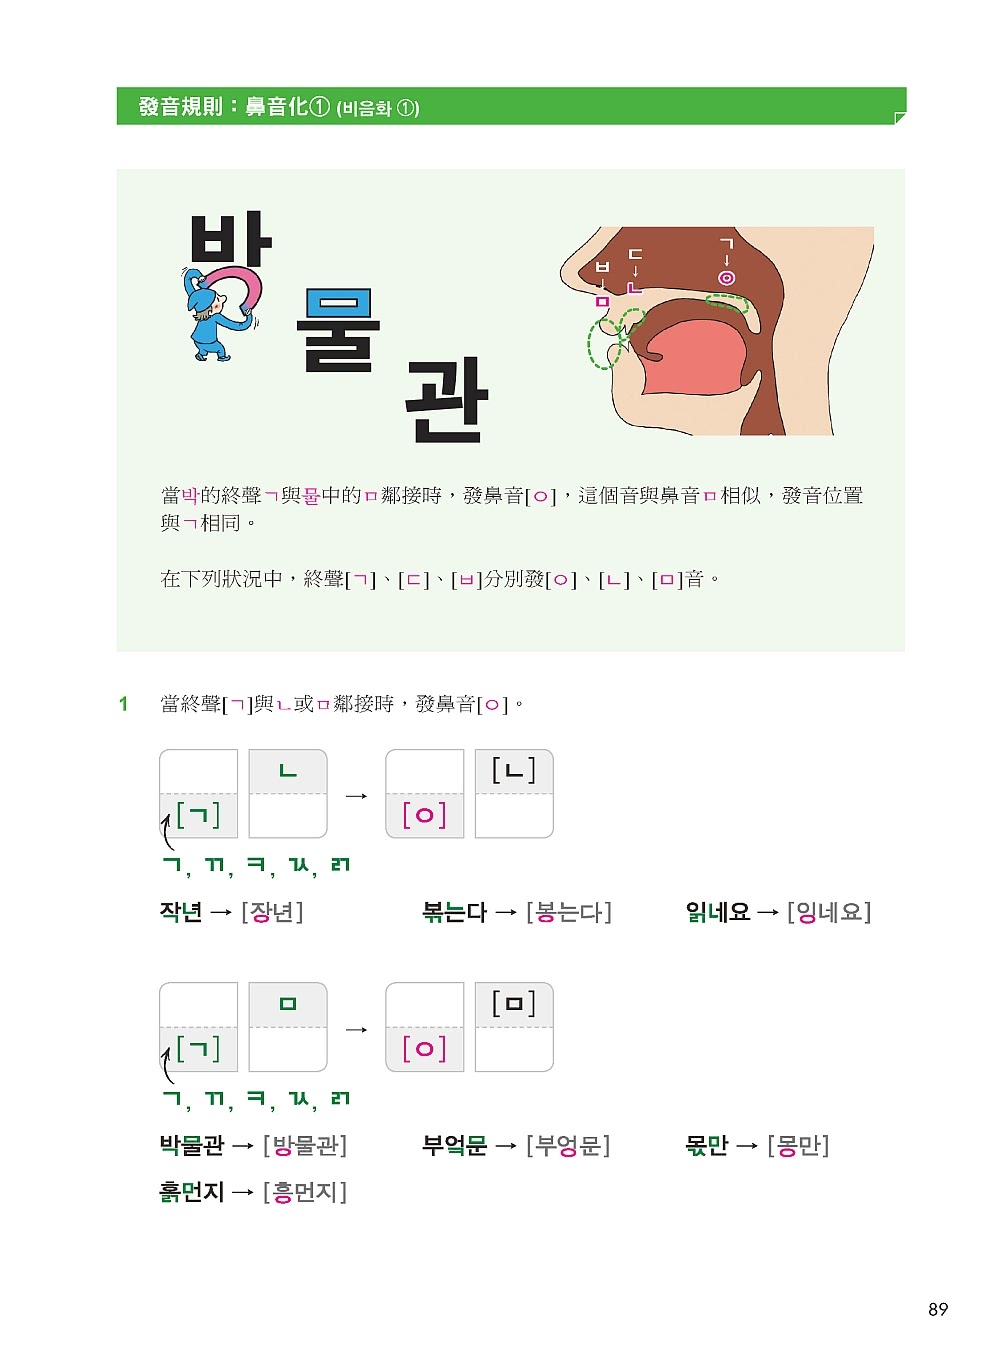 標準韓國語發音：基本發音、變音、連音、語調、語速一本搞定，讓你練就一口道地的首爾腔！